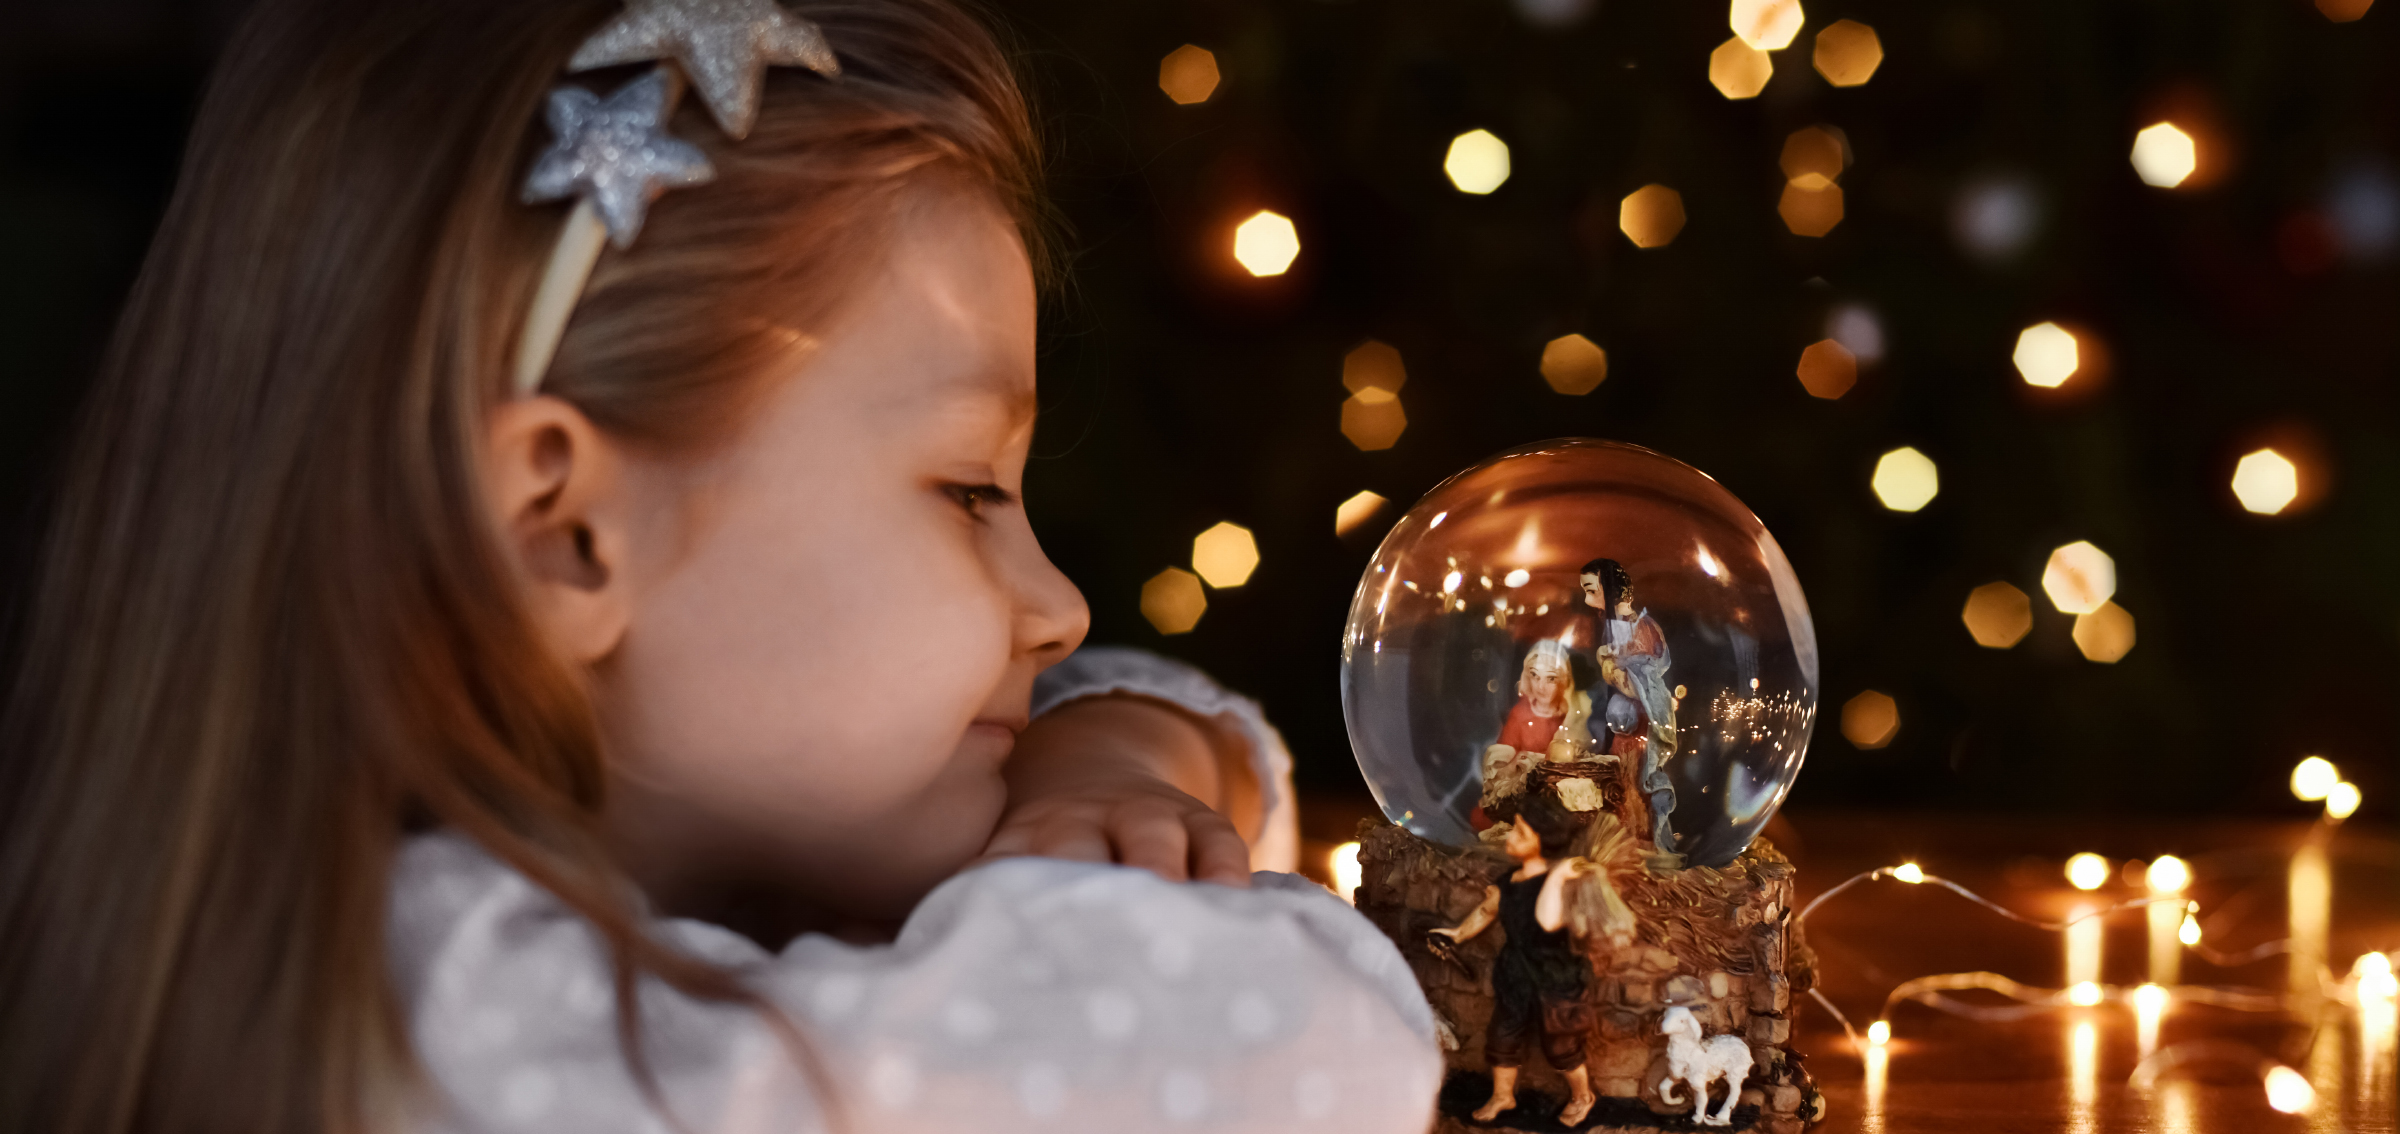 Flicka tittar på en snöglob med en julkrubba i.